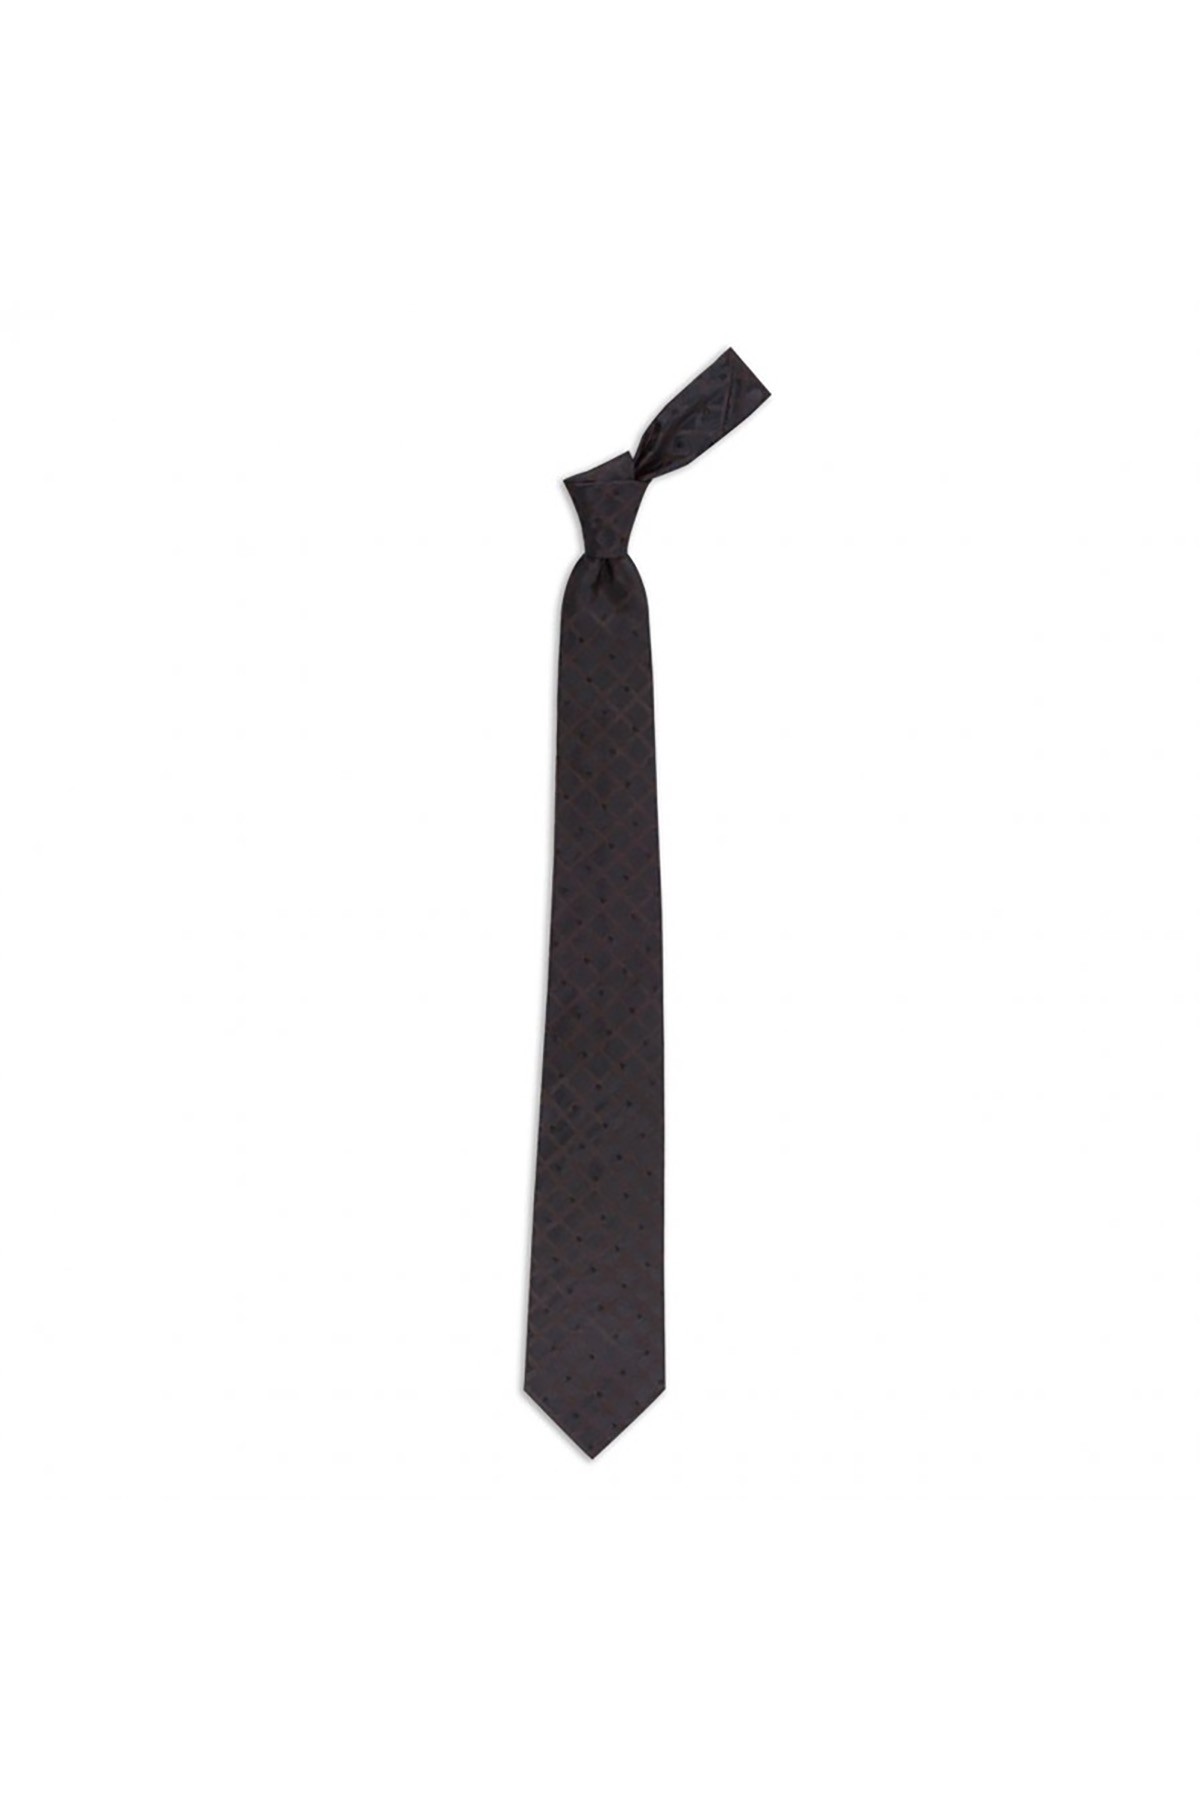 Ekose desenli 8 cm genişliğinde ipek kravat - Koyu kahverengi